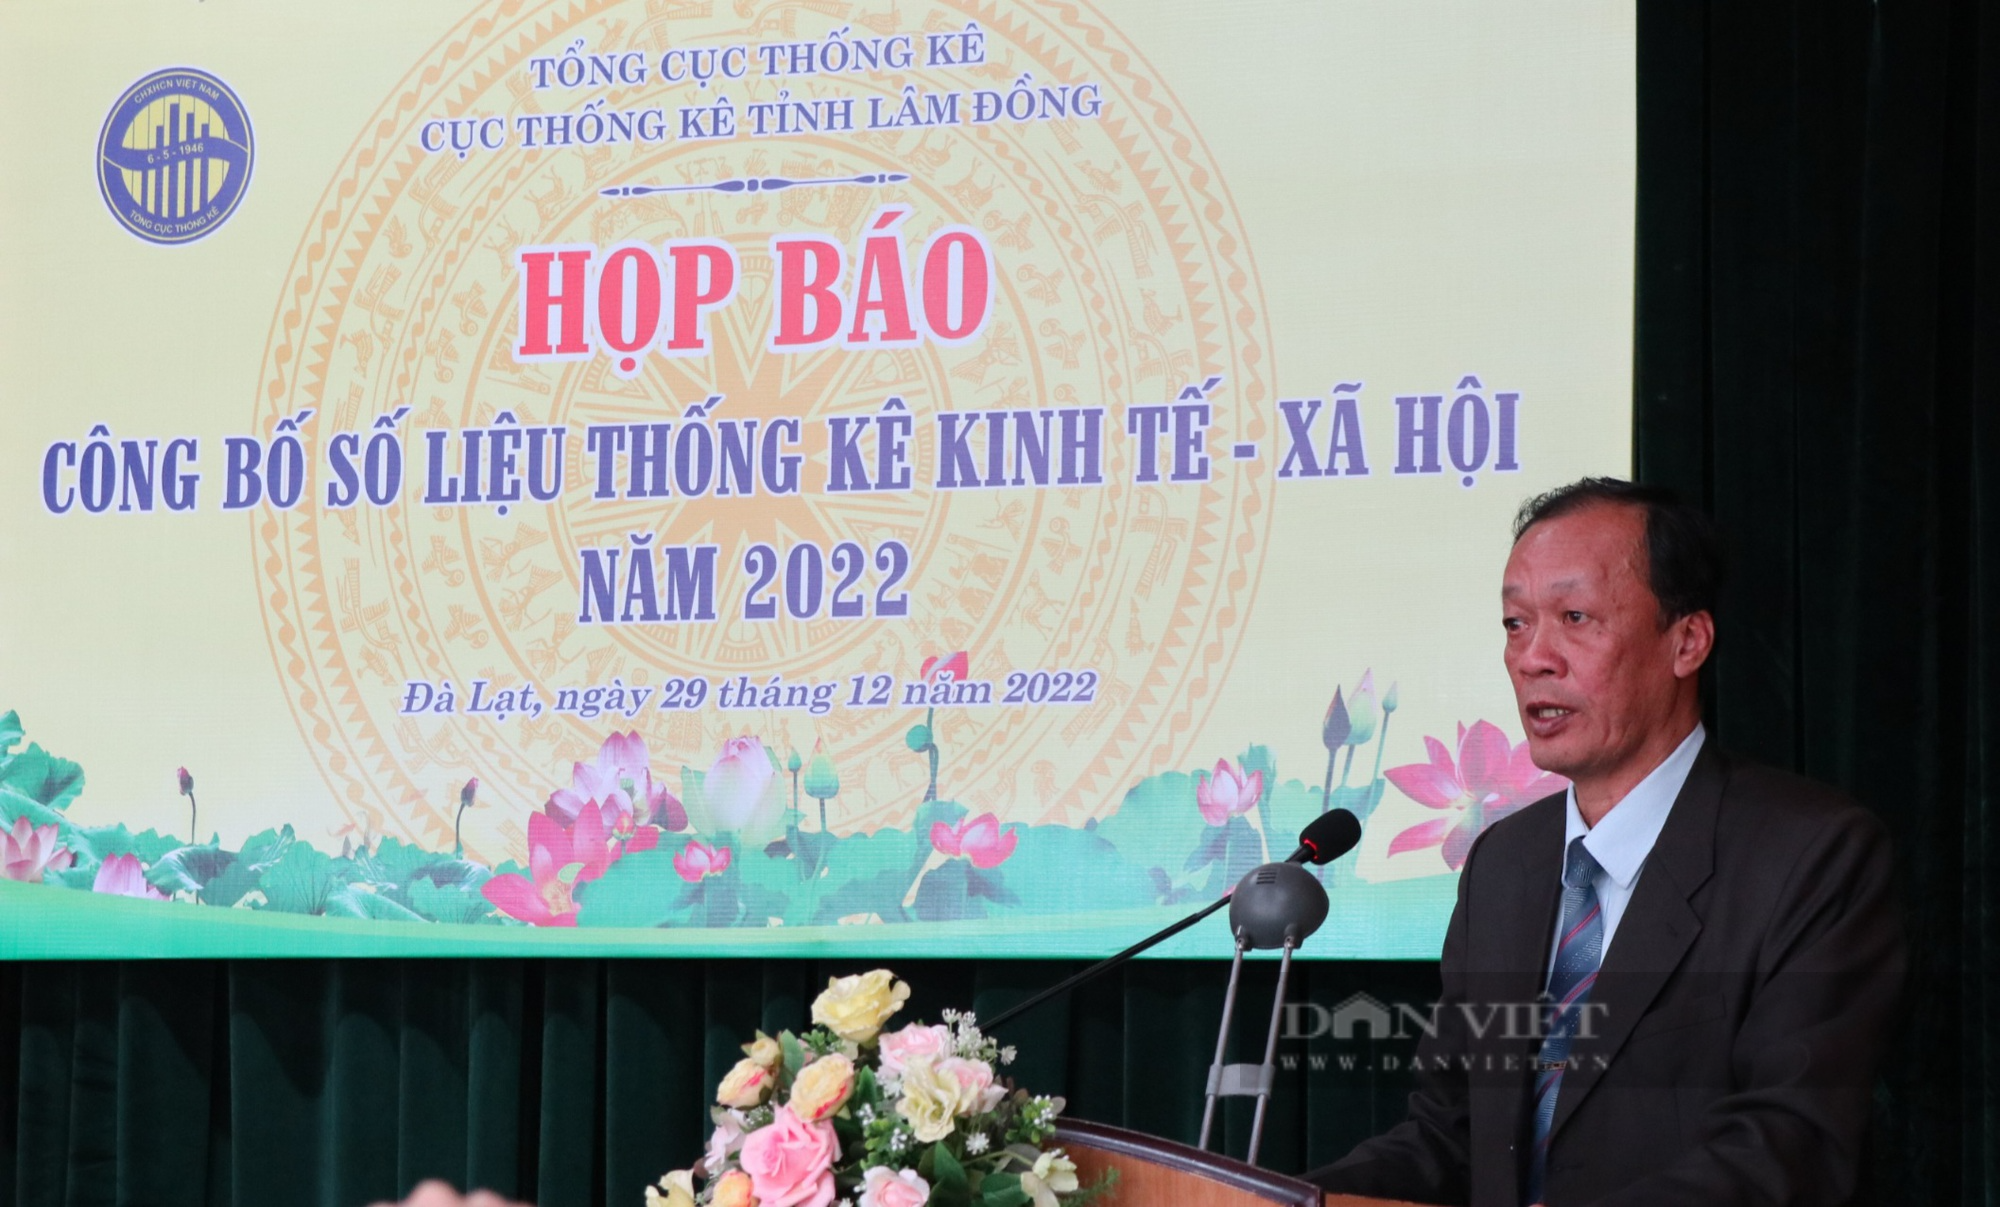 GRDP tỉnh Lâm Đồng tăng cao nhất khu vực Tây Nguyên - Ảnh 1.